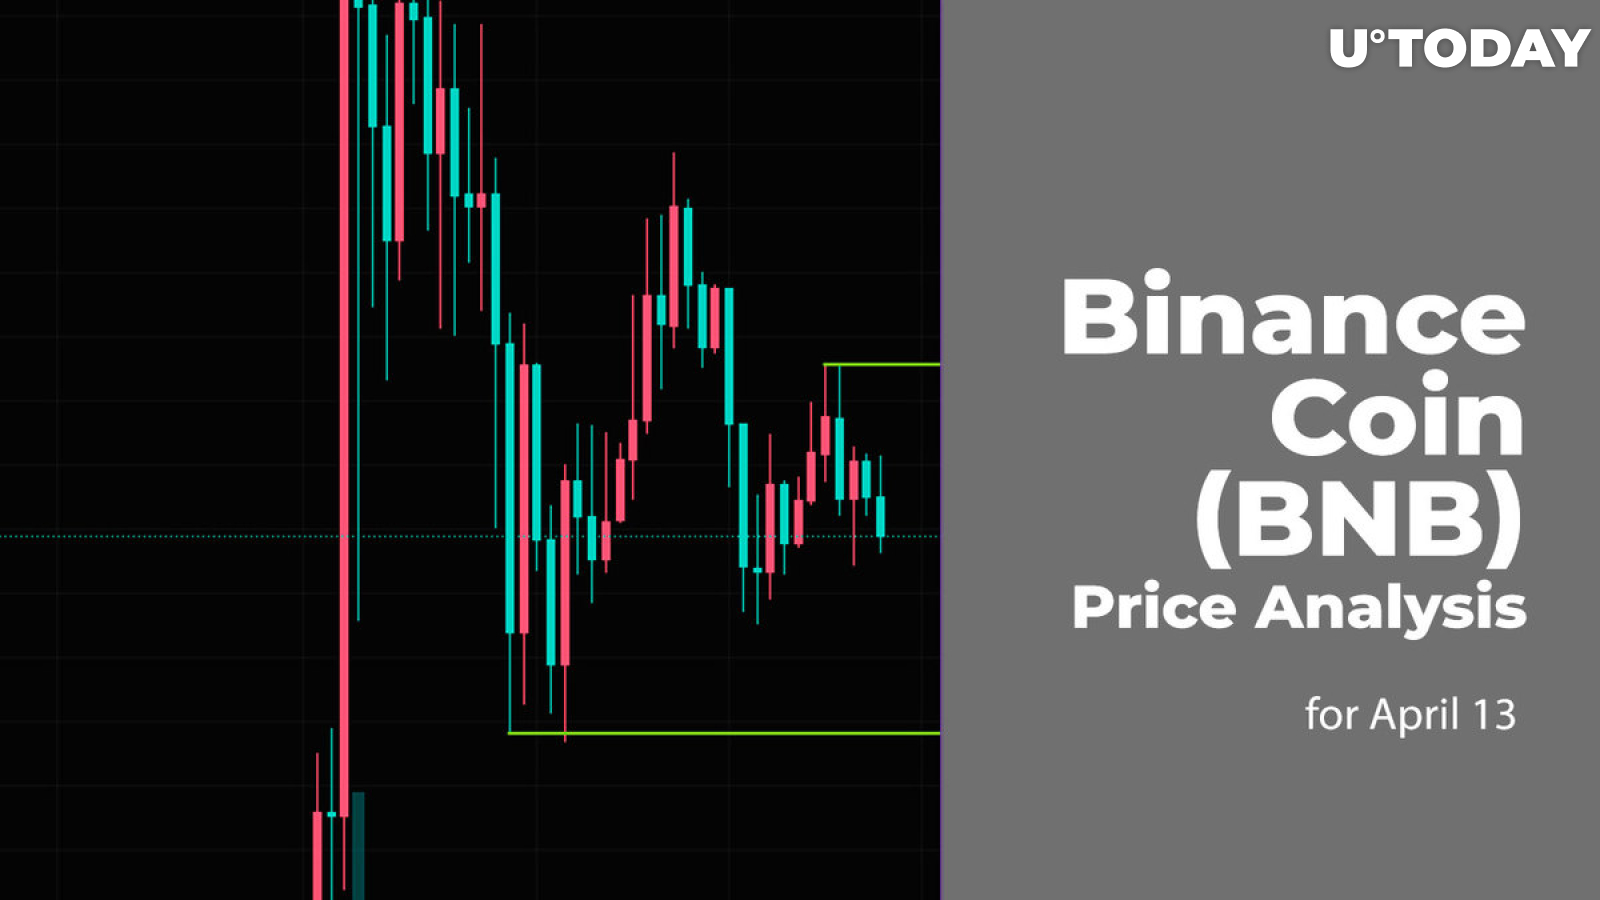 Binance Coin (BNB) Price Prediction for April 13